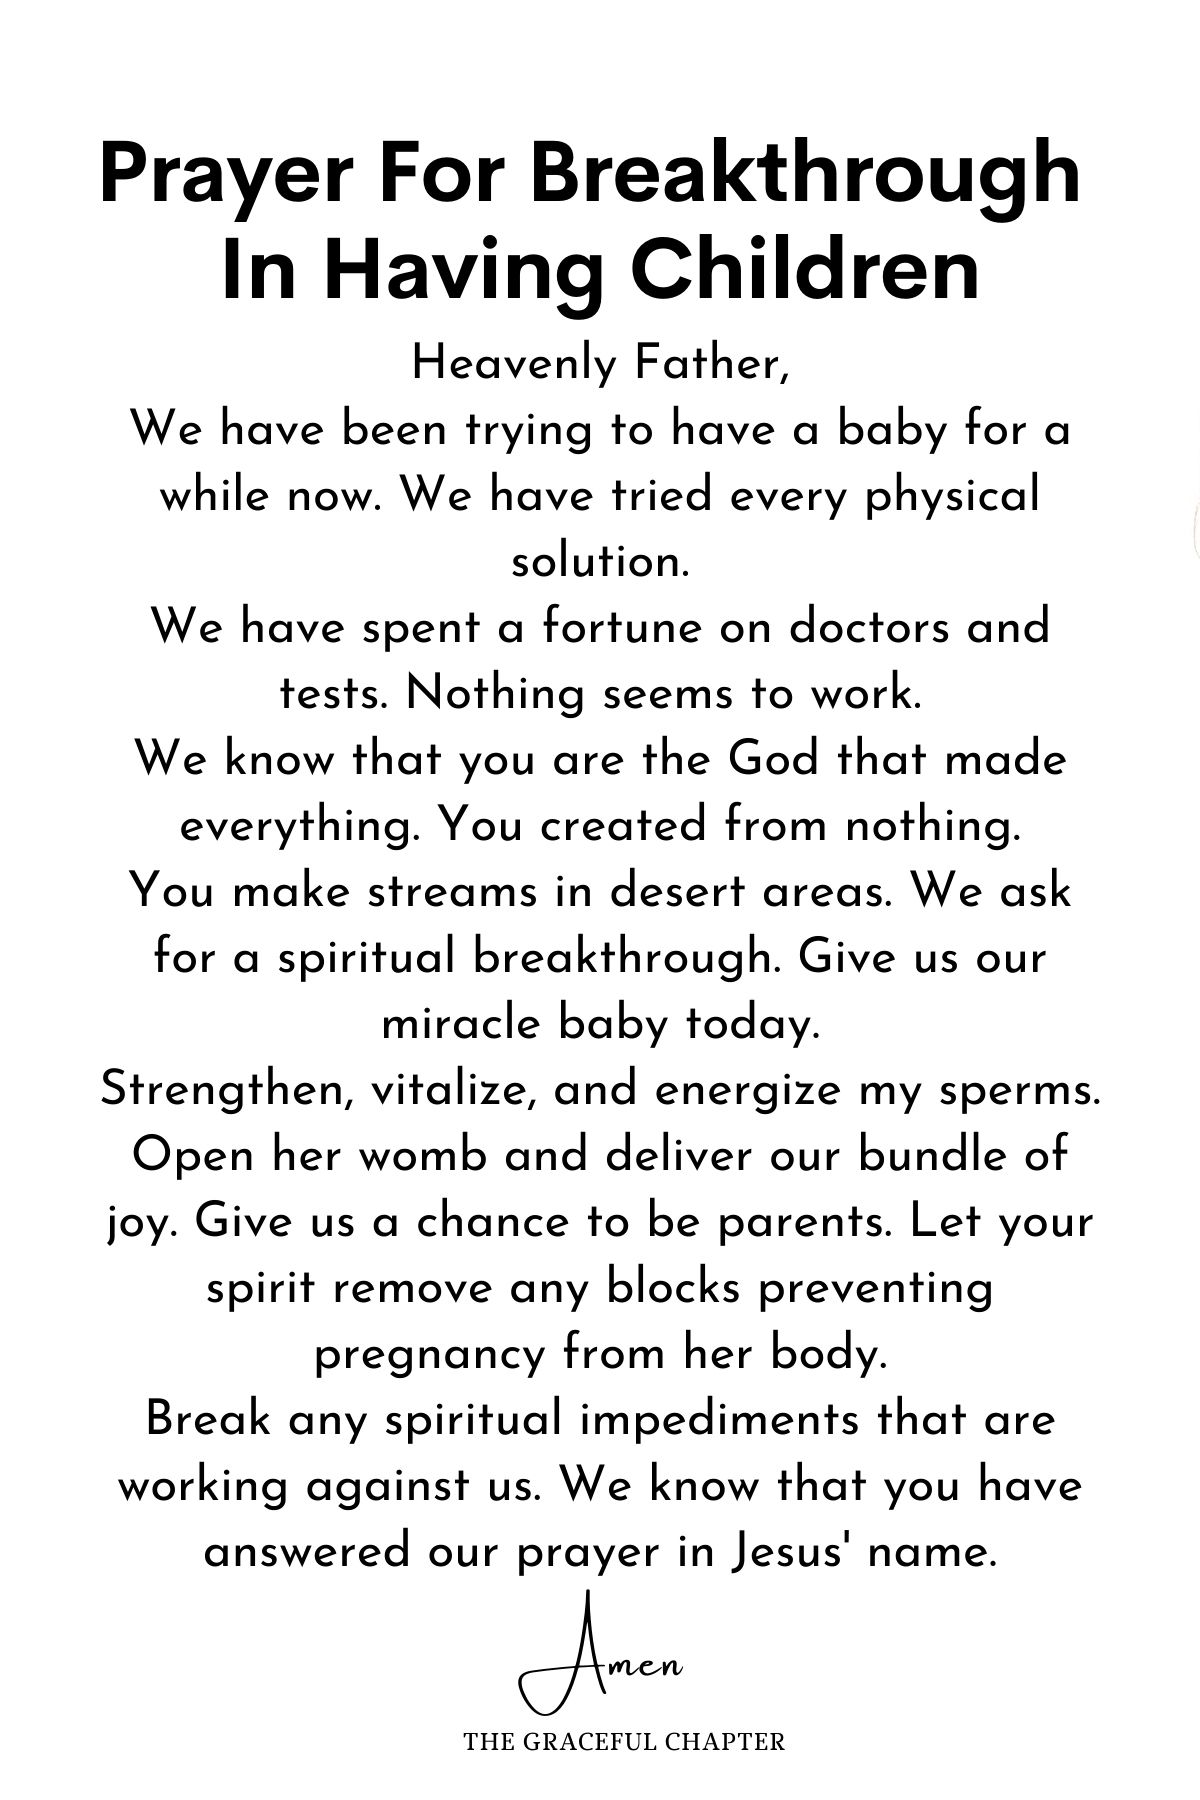 Prayer for breakthrough in having children - prayers for breakthroughs